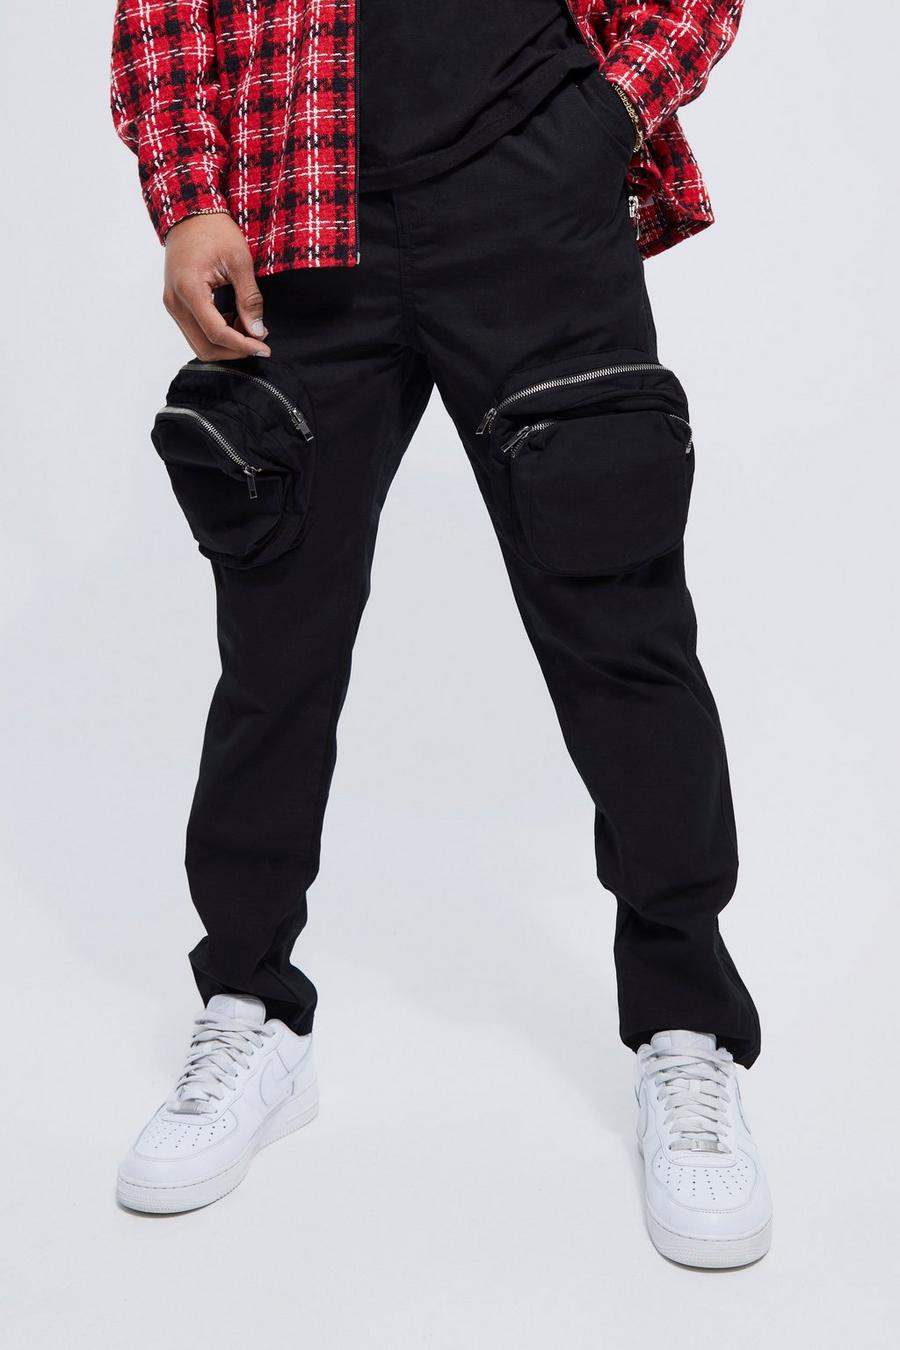 שחור black מכנסי דגמ'ח בגזרה צרה עם רוכסן 3D ורצועת מותניים מובנית